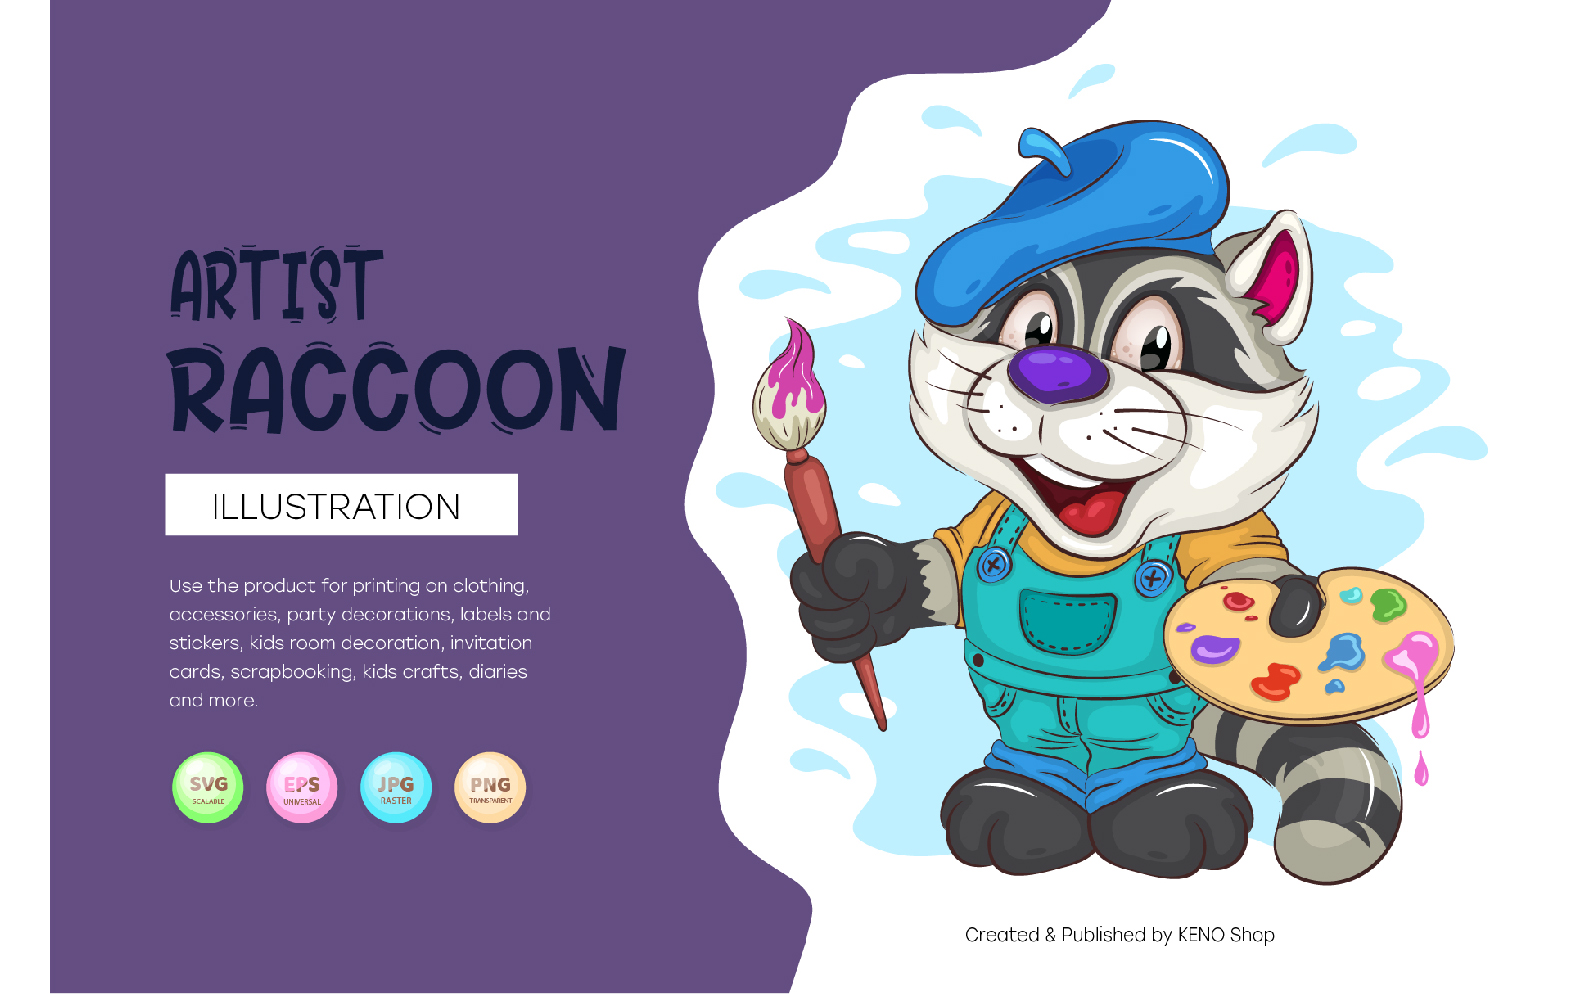 Cartoon Raccoon Artist. T-Shirt, PNG, SVG.